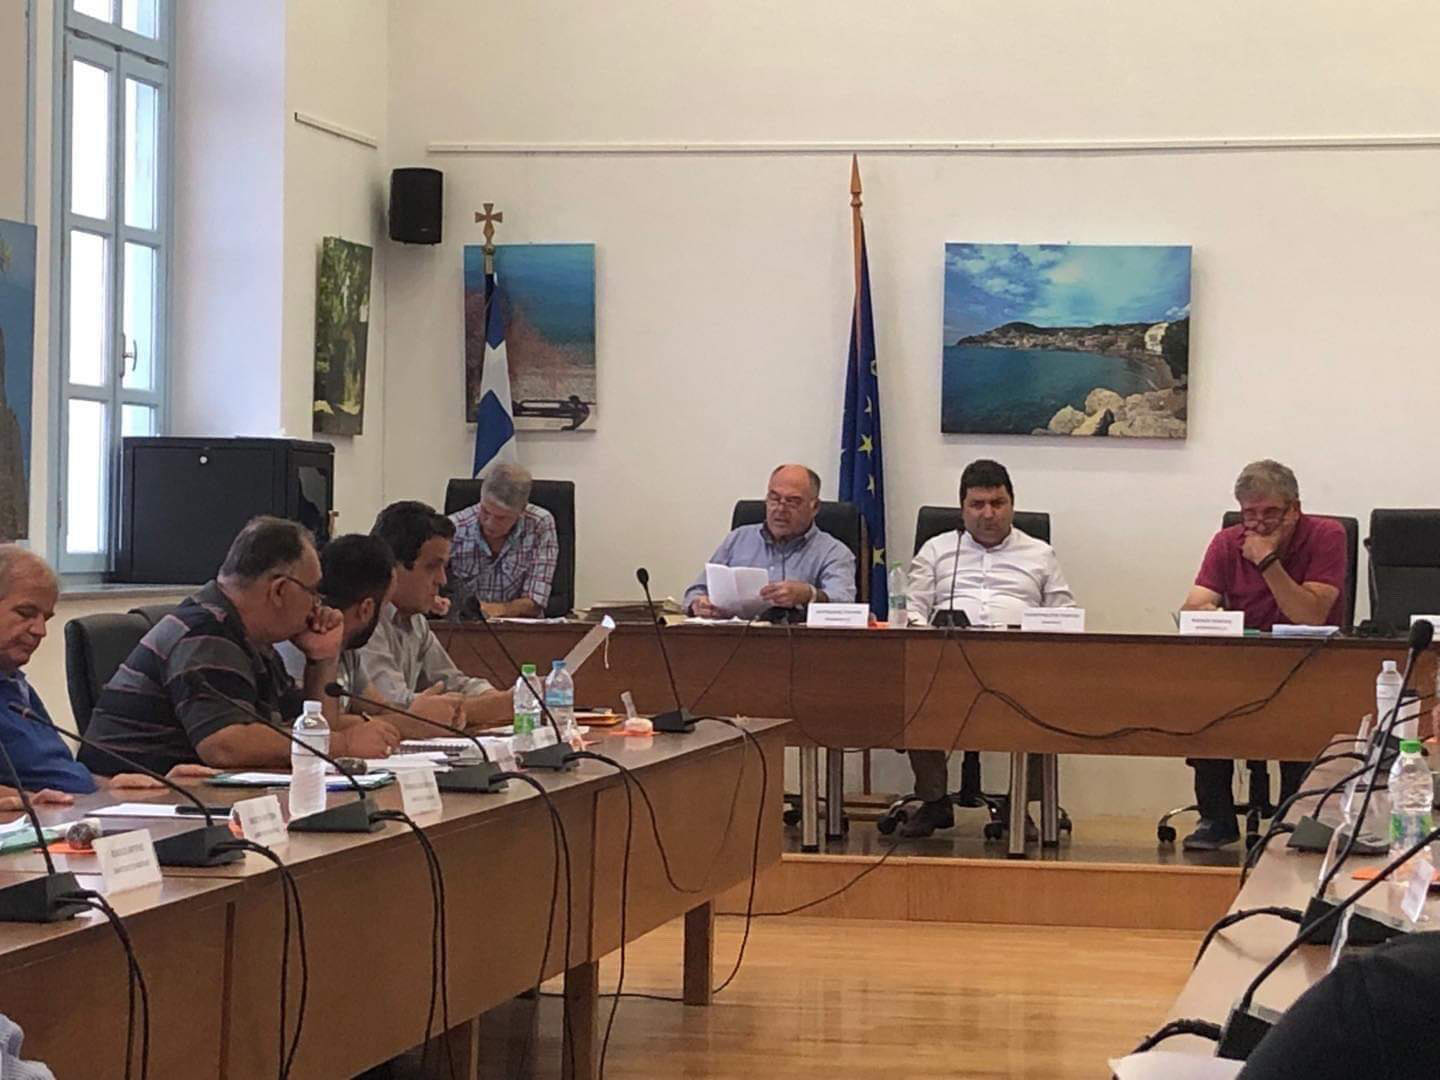 Δήμος Μαντουδίου Λίμνης Αγίας Άννας: Ψηφίστηκε ο ισολογισμός του 2019 με ευρεία πλειοψηφία